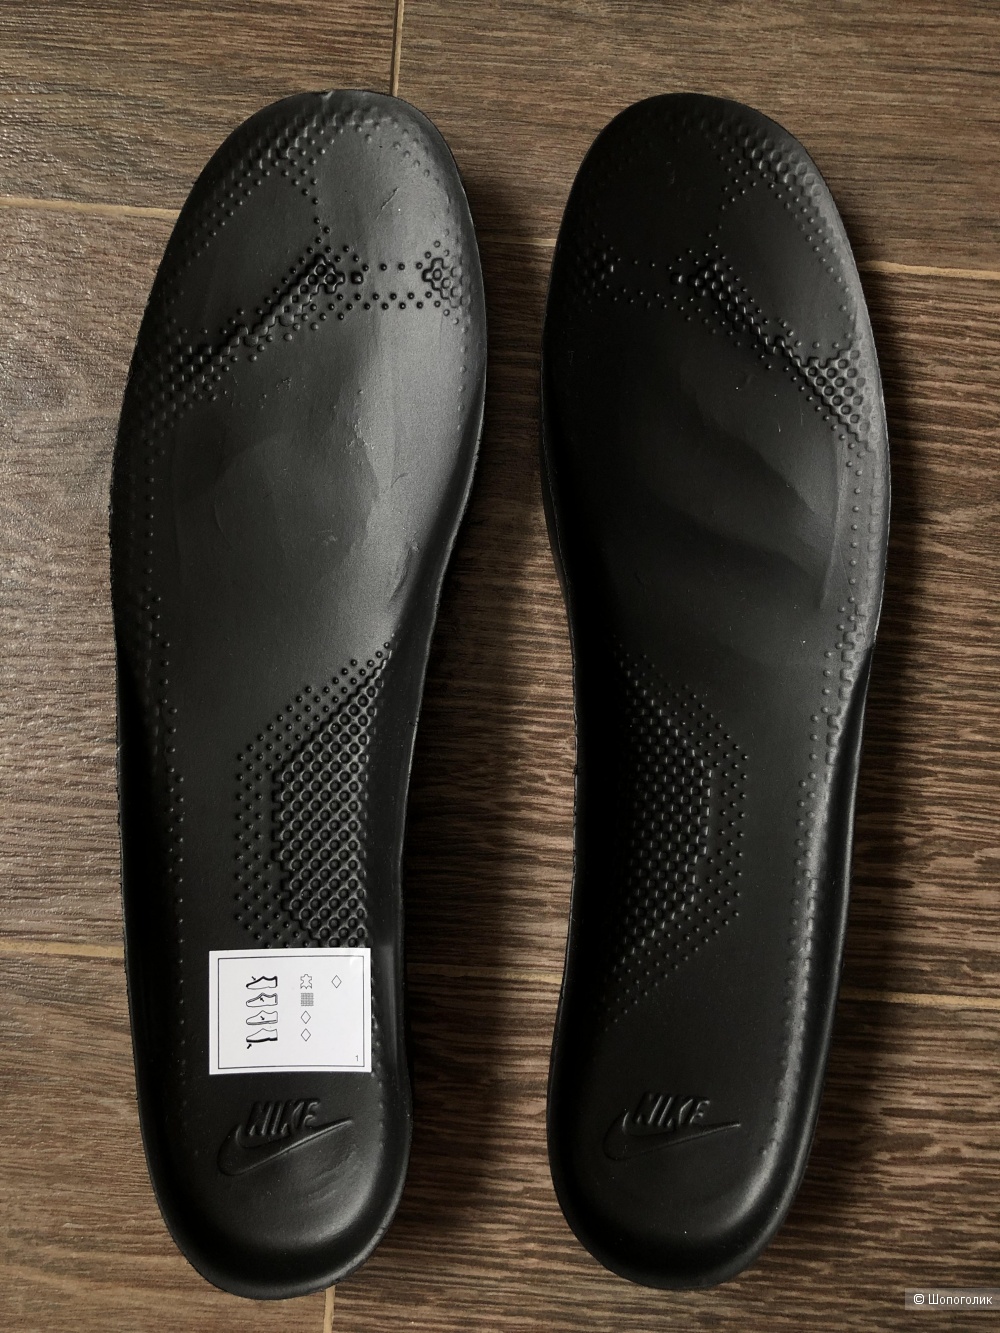 Мужские кроссовки NIKE COURT BOROUGH MID WINTER, размер 44.5 / 11.5 US, 29.5см по стельке.